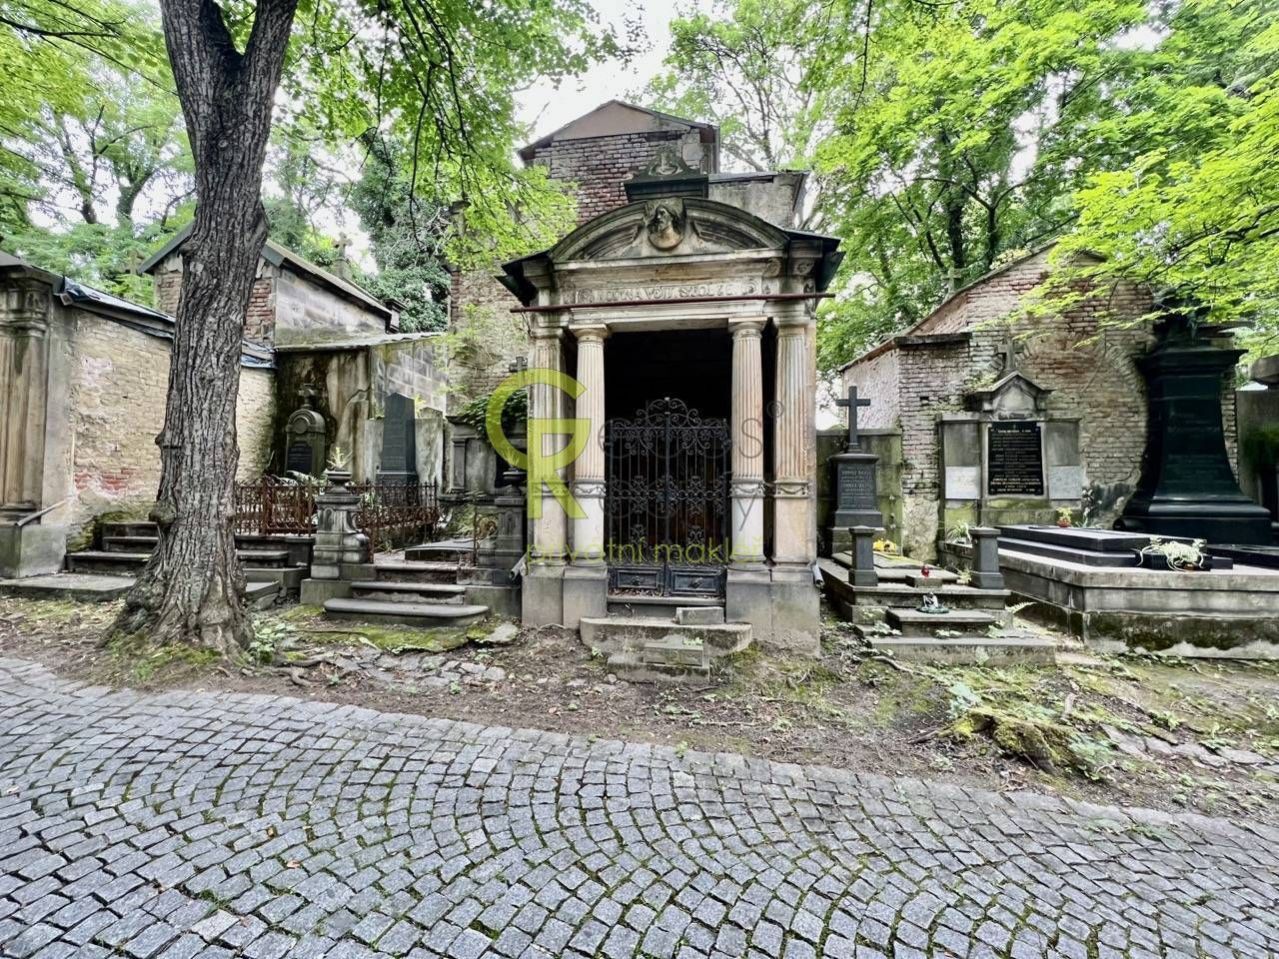 Kaplová hrobka před rekonstrukcí - Olšanské hřbitovy, Praha 3, obrázek č. 2